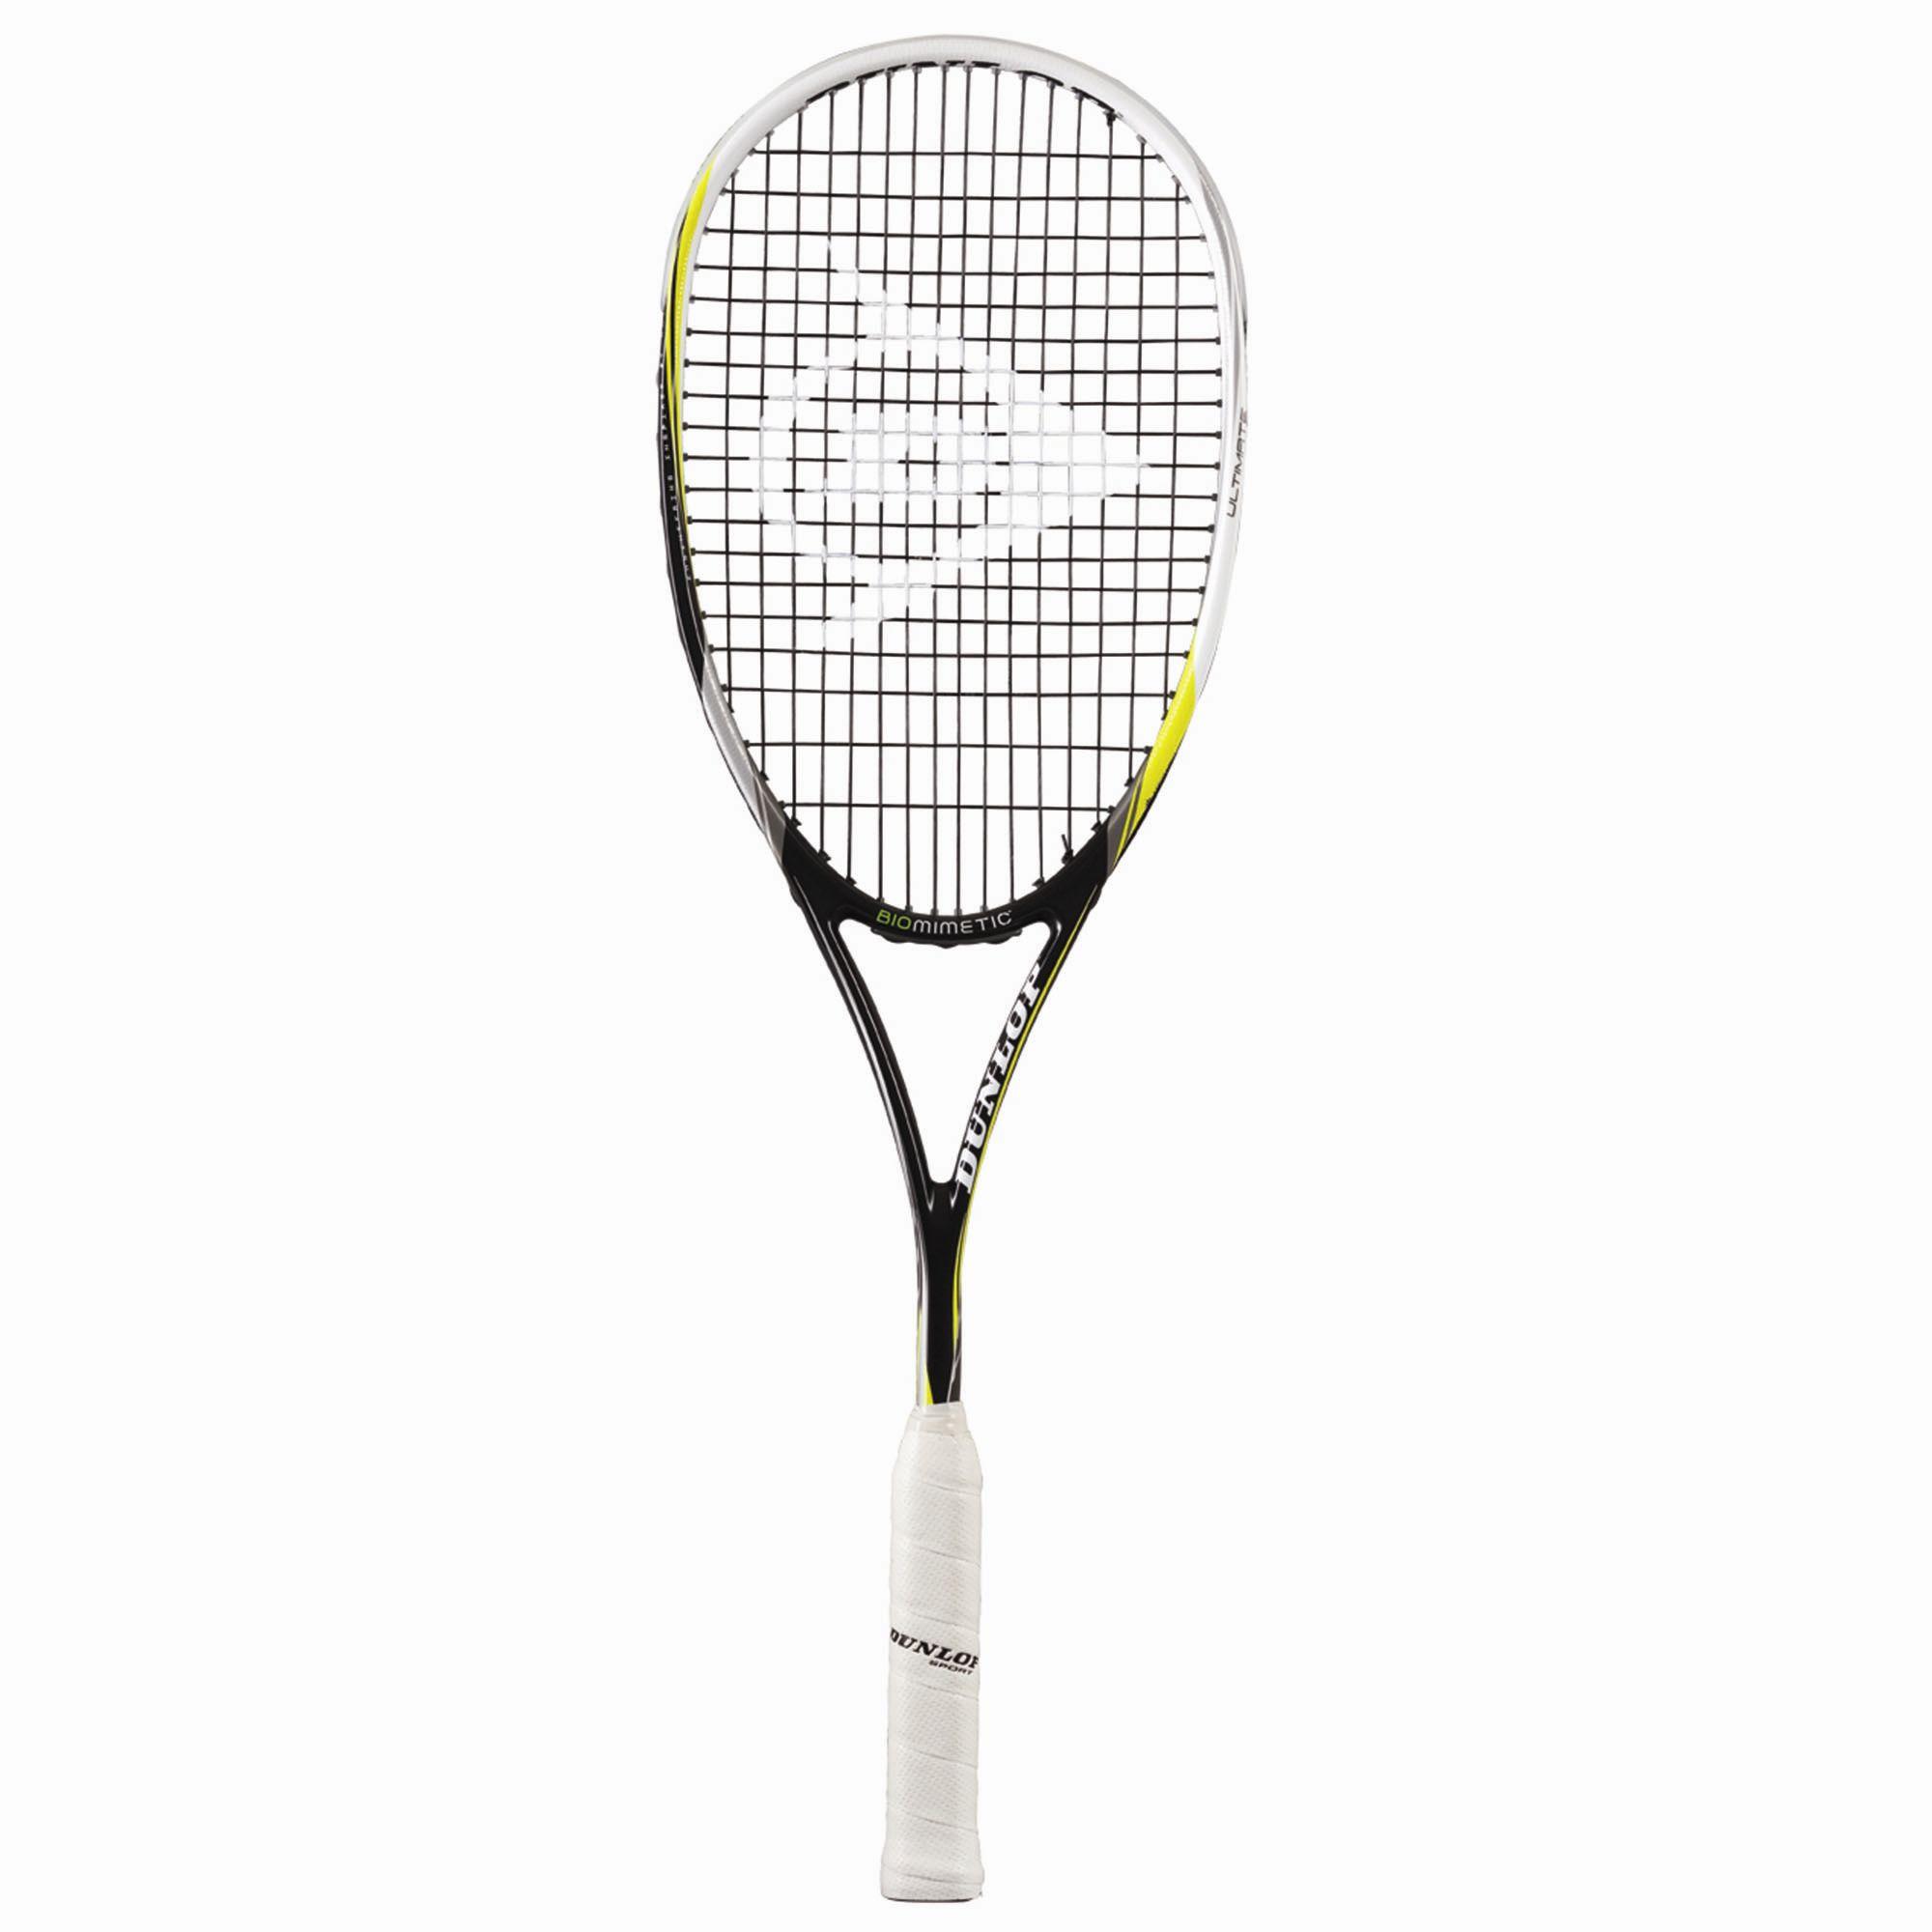 Dunlop Biomimetic Ultimate Squash Racket